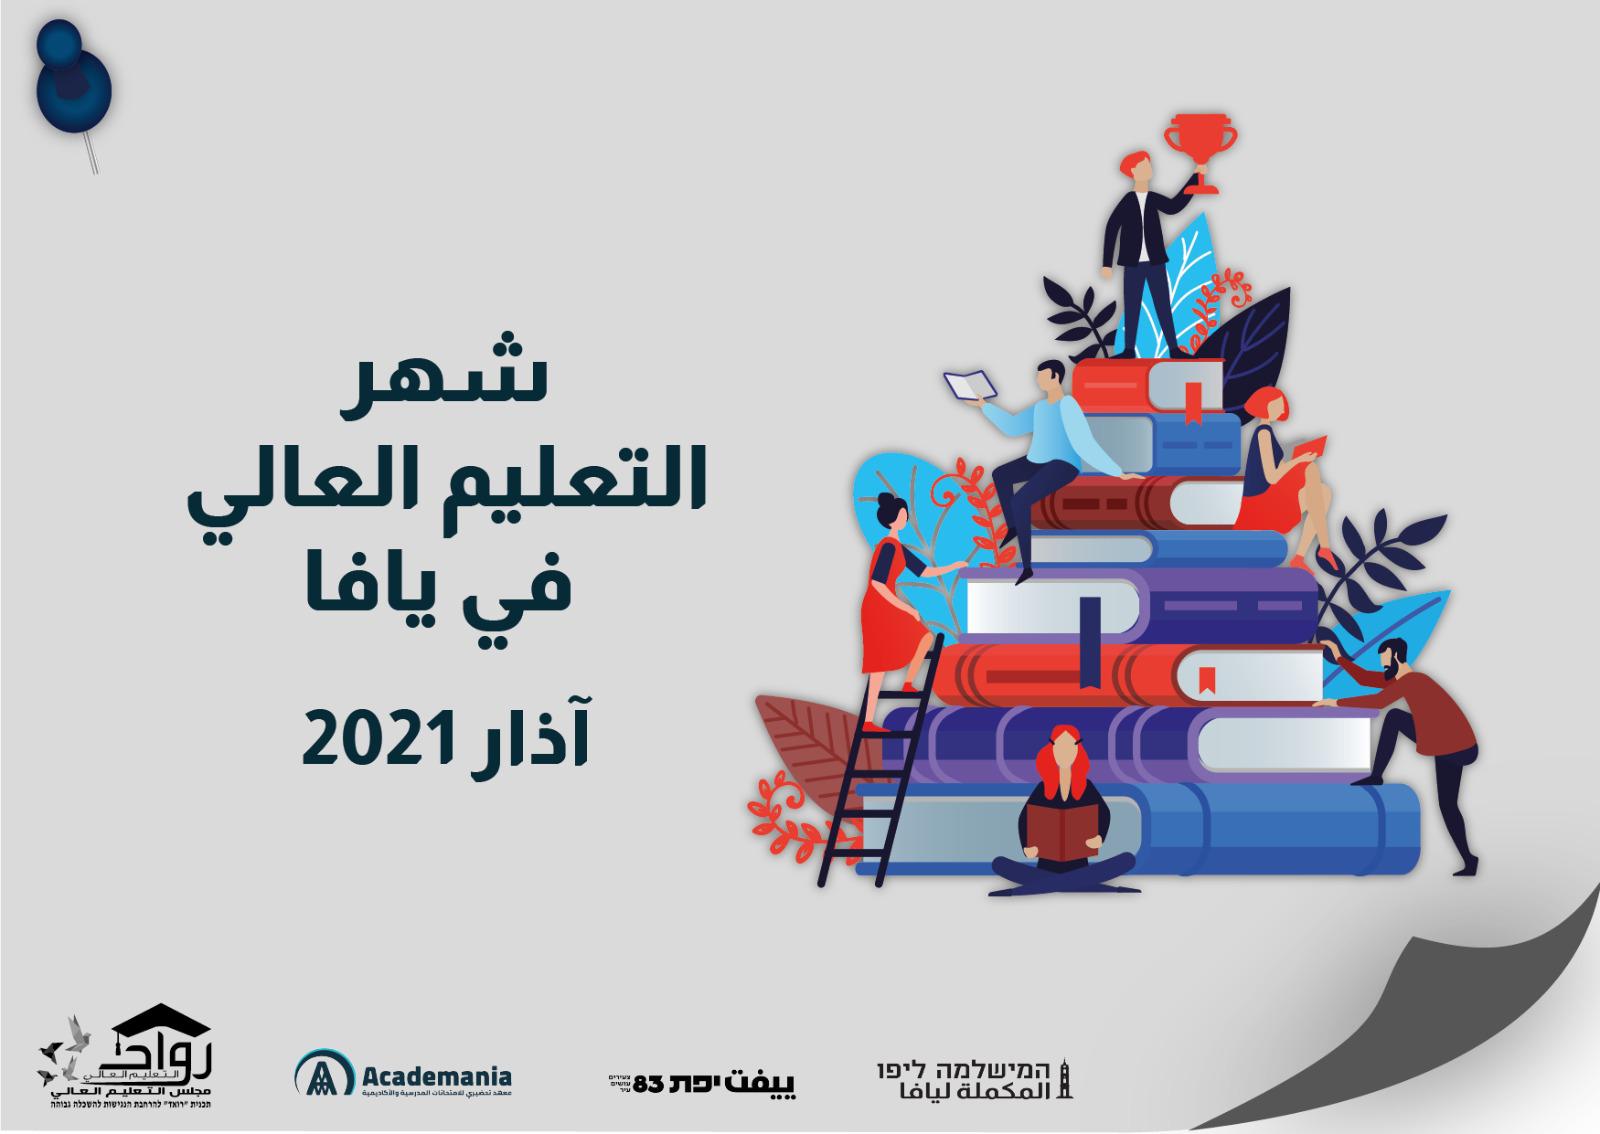  آذار التعليم العالي: مركز الشبيبة في يافا يطلق برنامجًا للتوجيه الدراسي والأكاديمي